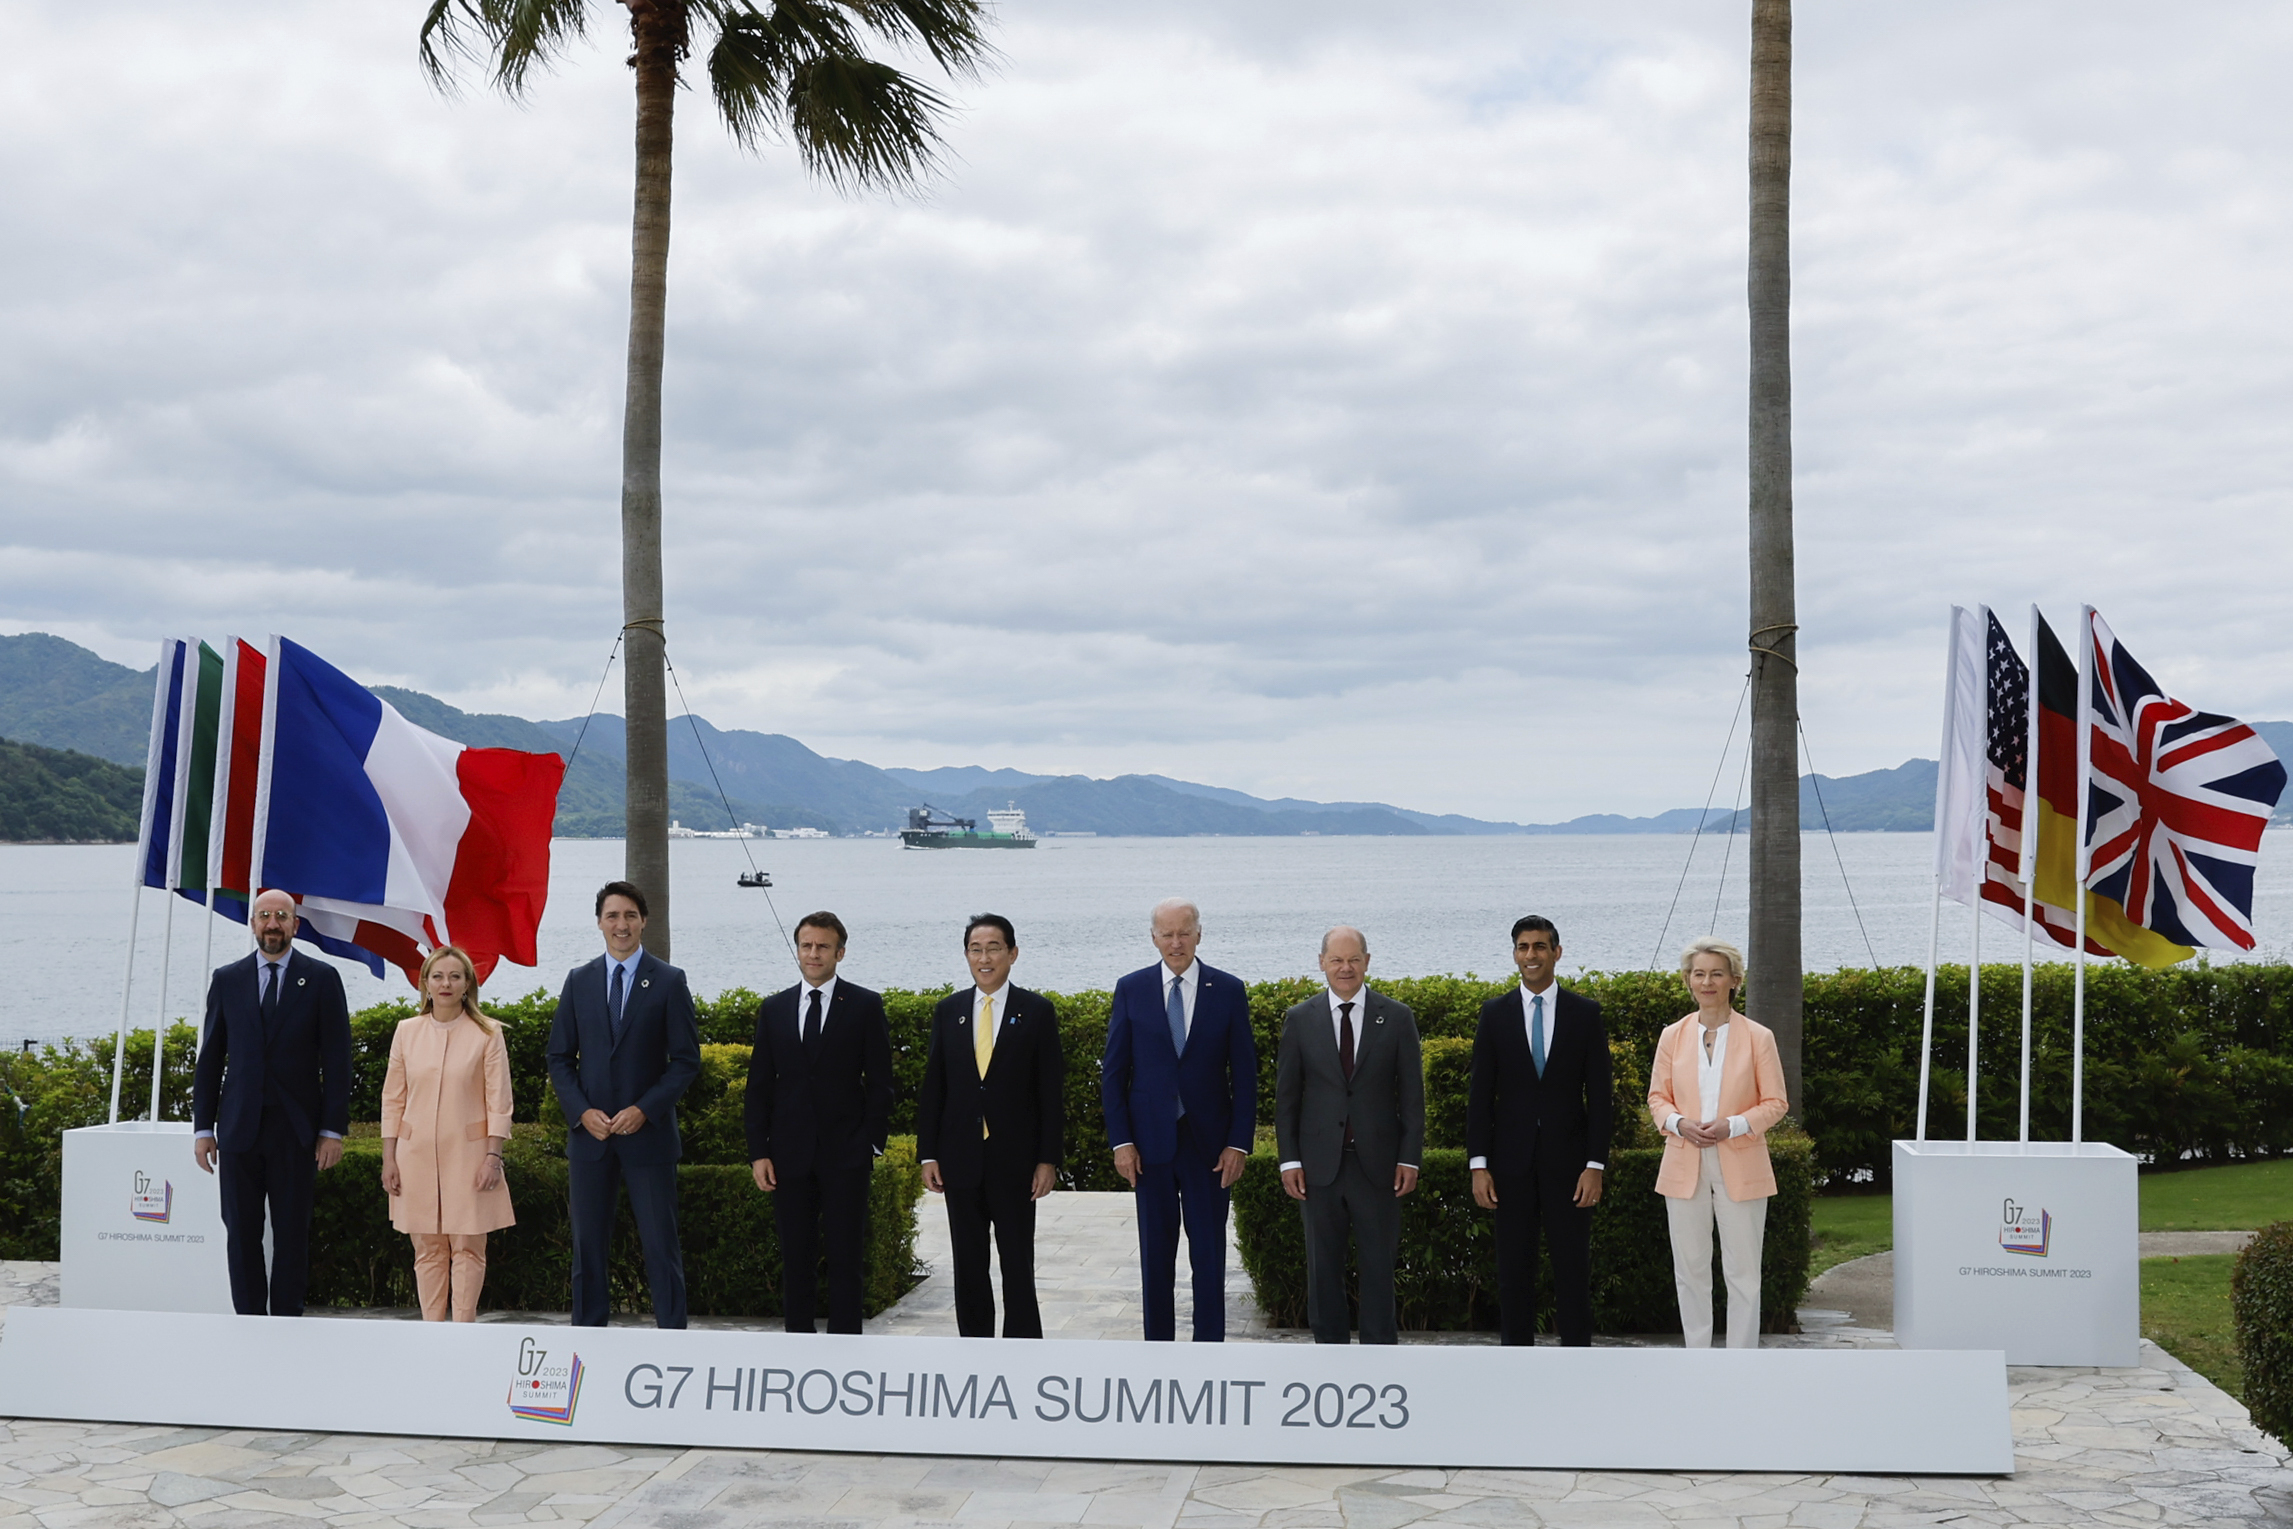 Σε νέα πρωτοβουλία για την καταπολέμηση του οικονομικού εξαναγκασμού συμφωνούν οι G7